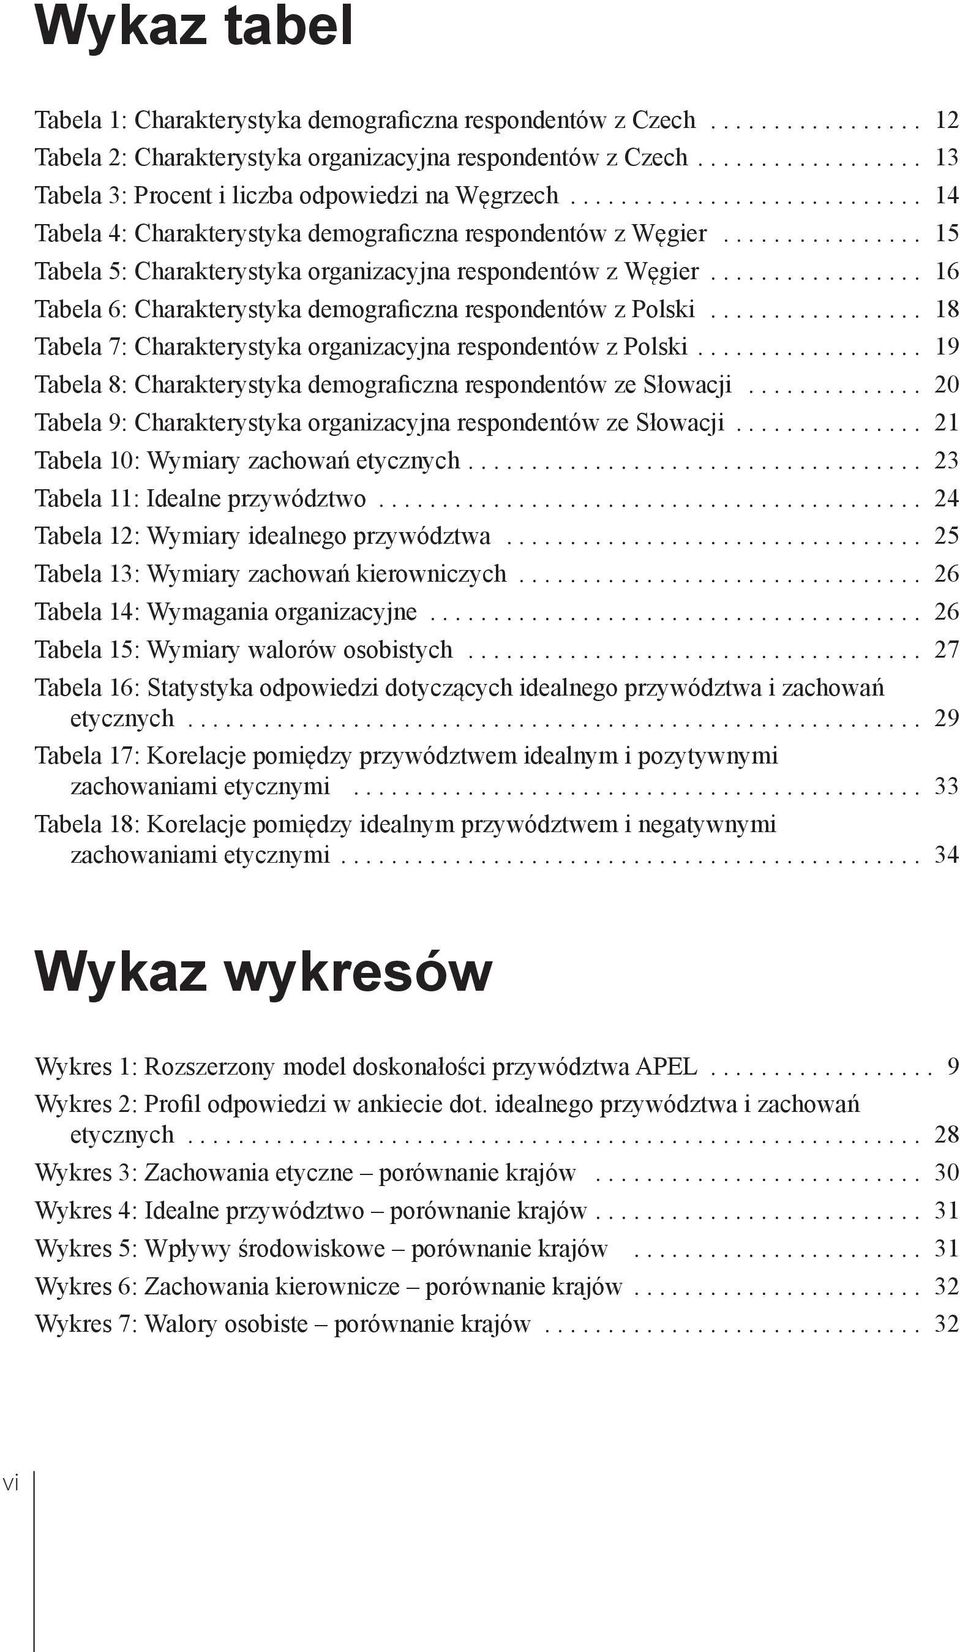 ............... 15 Tabela 5: Charakterystyka organizacyjna respondentów z Węgier................. 16 Tabela 6: Charakterystyka demograficzna respondentów z Polski.